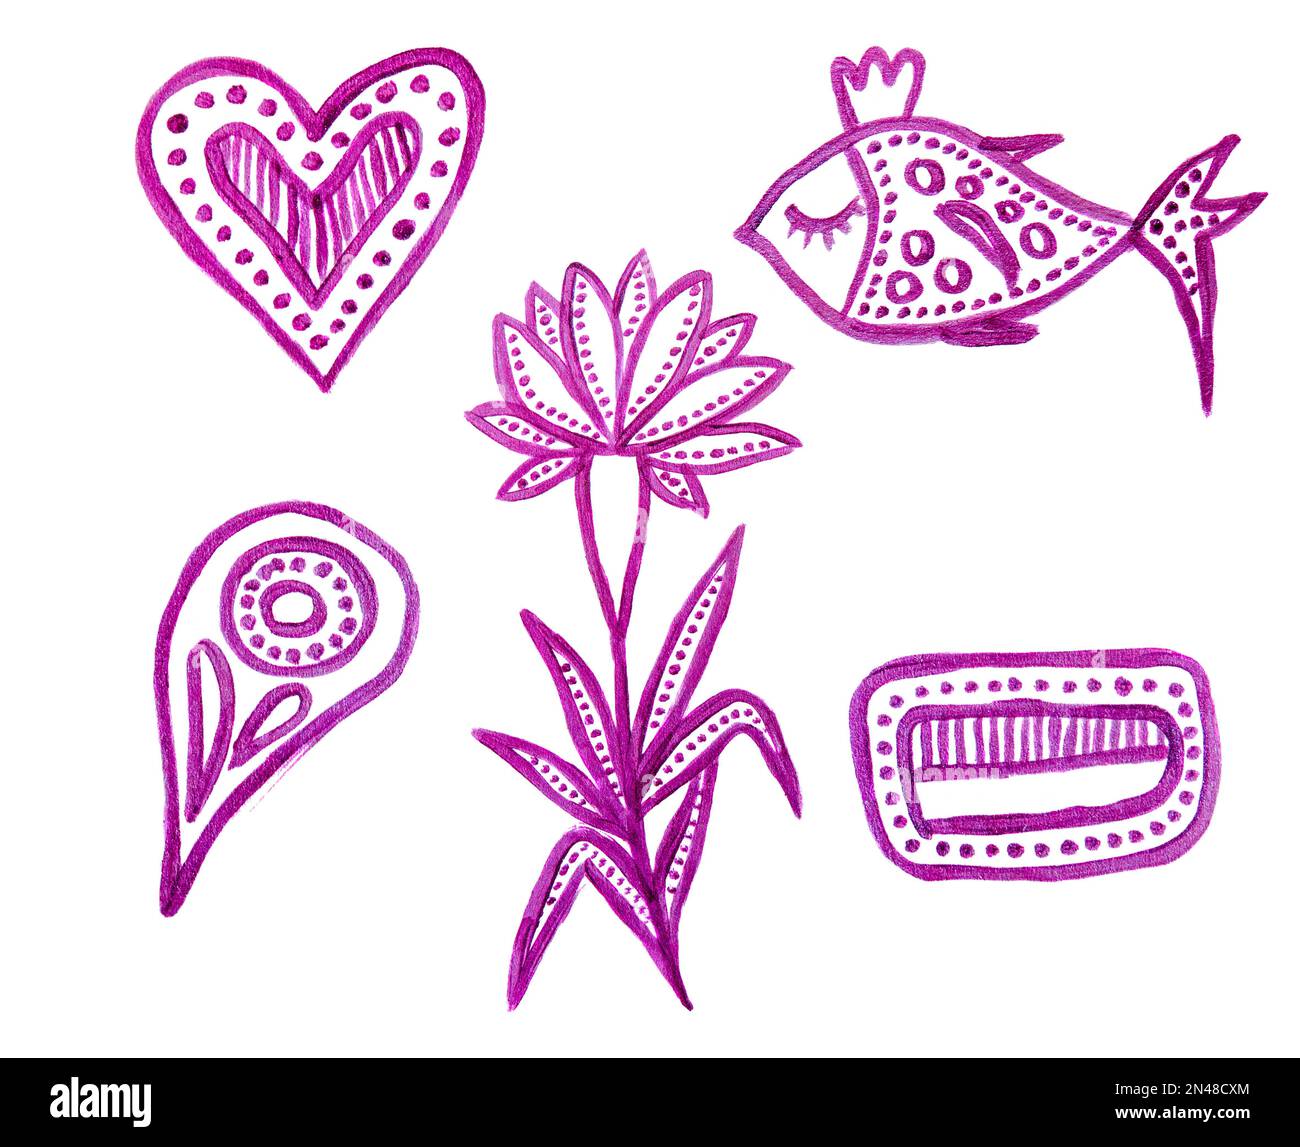 Ensemble de yoga boho dessiné à la main. Illustration ornementale. Éléments zentangle violets. Coeur, poisson, fleur, formes abstraites. Isolé sur blanc Banque D'Images